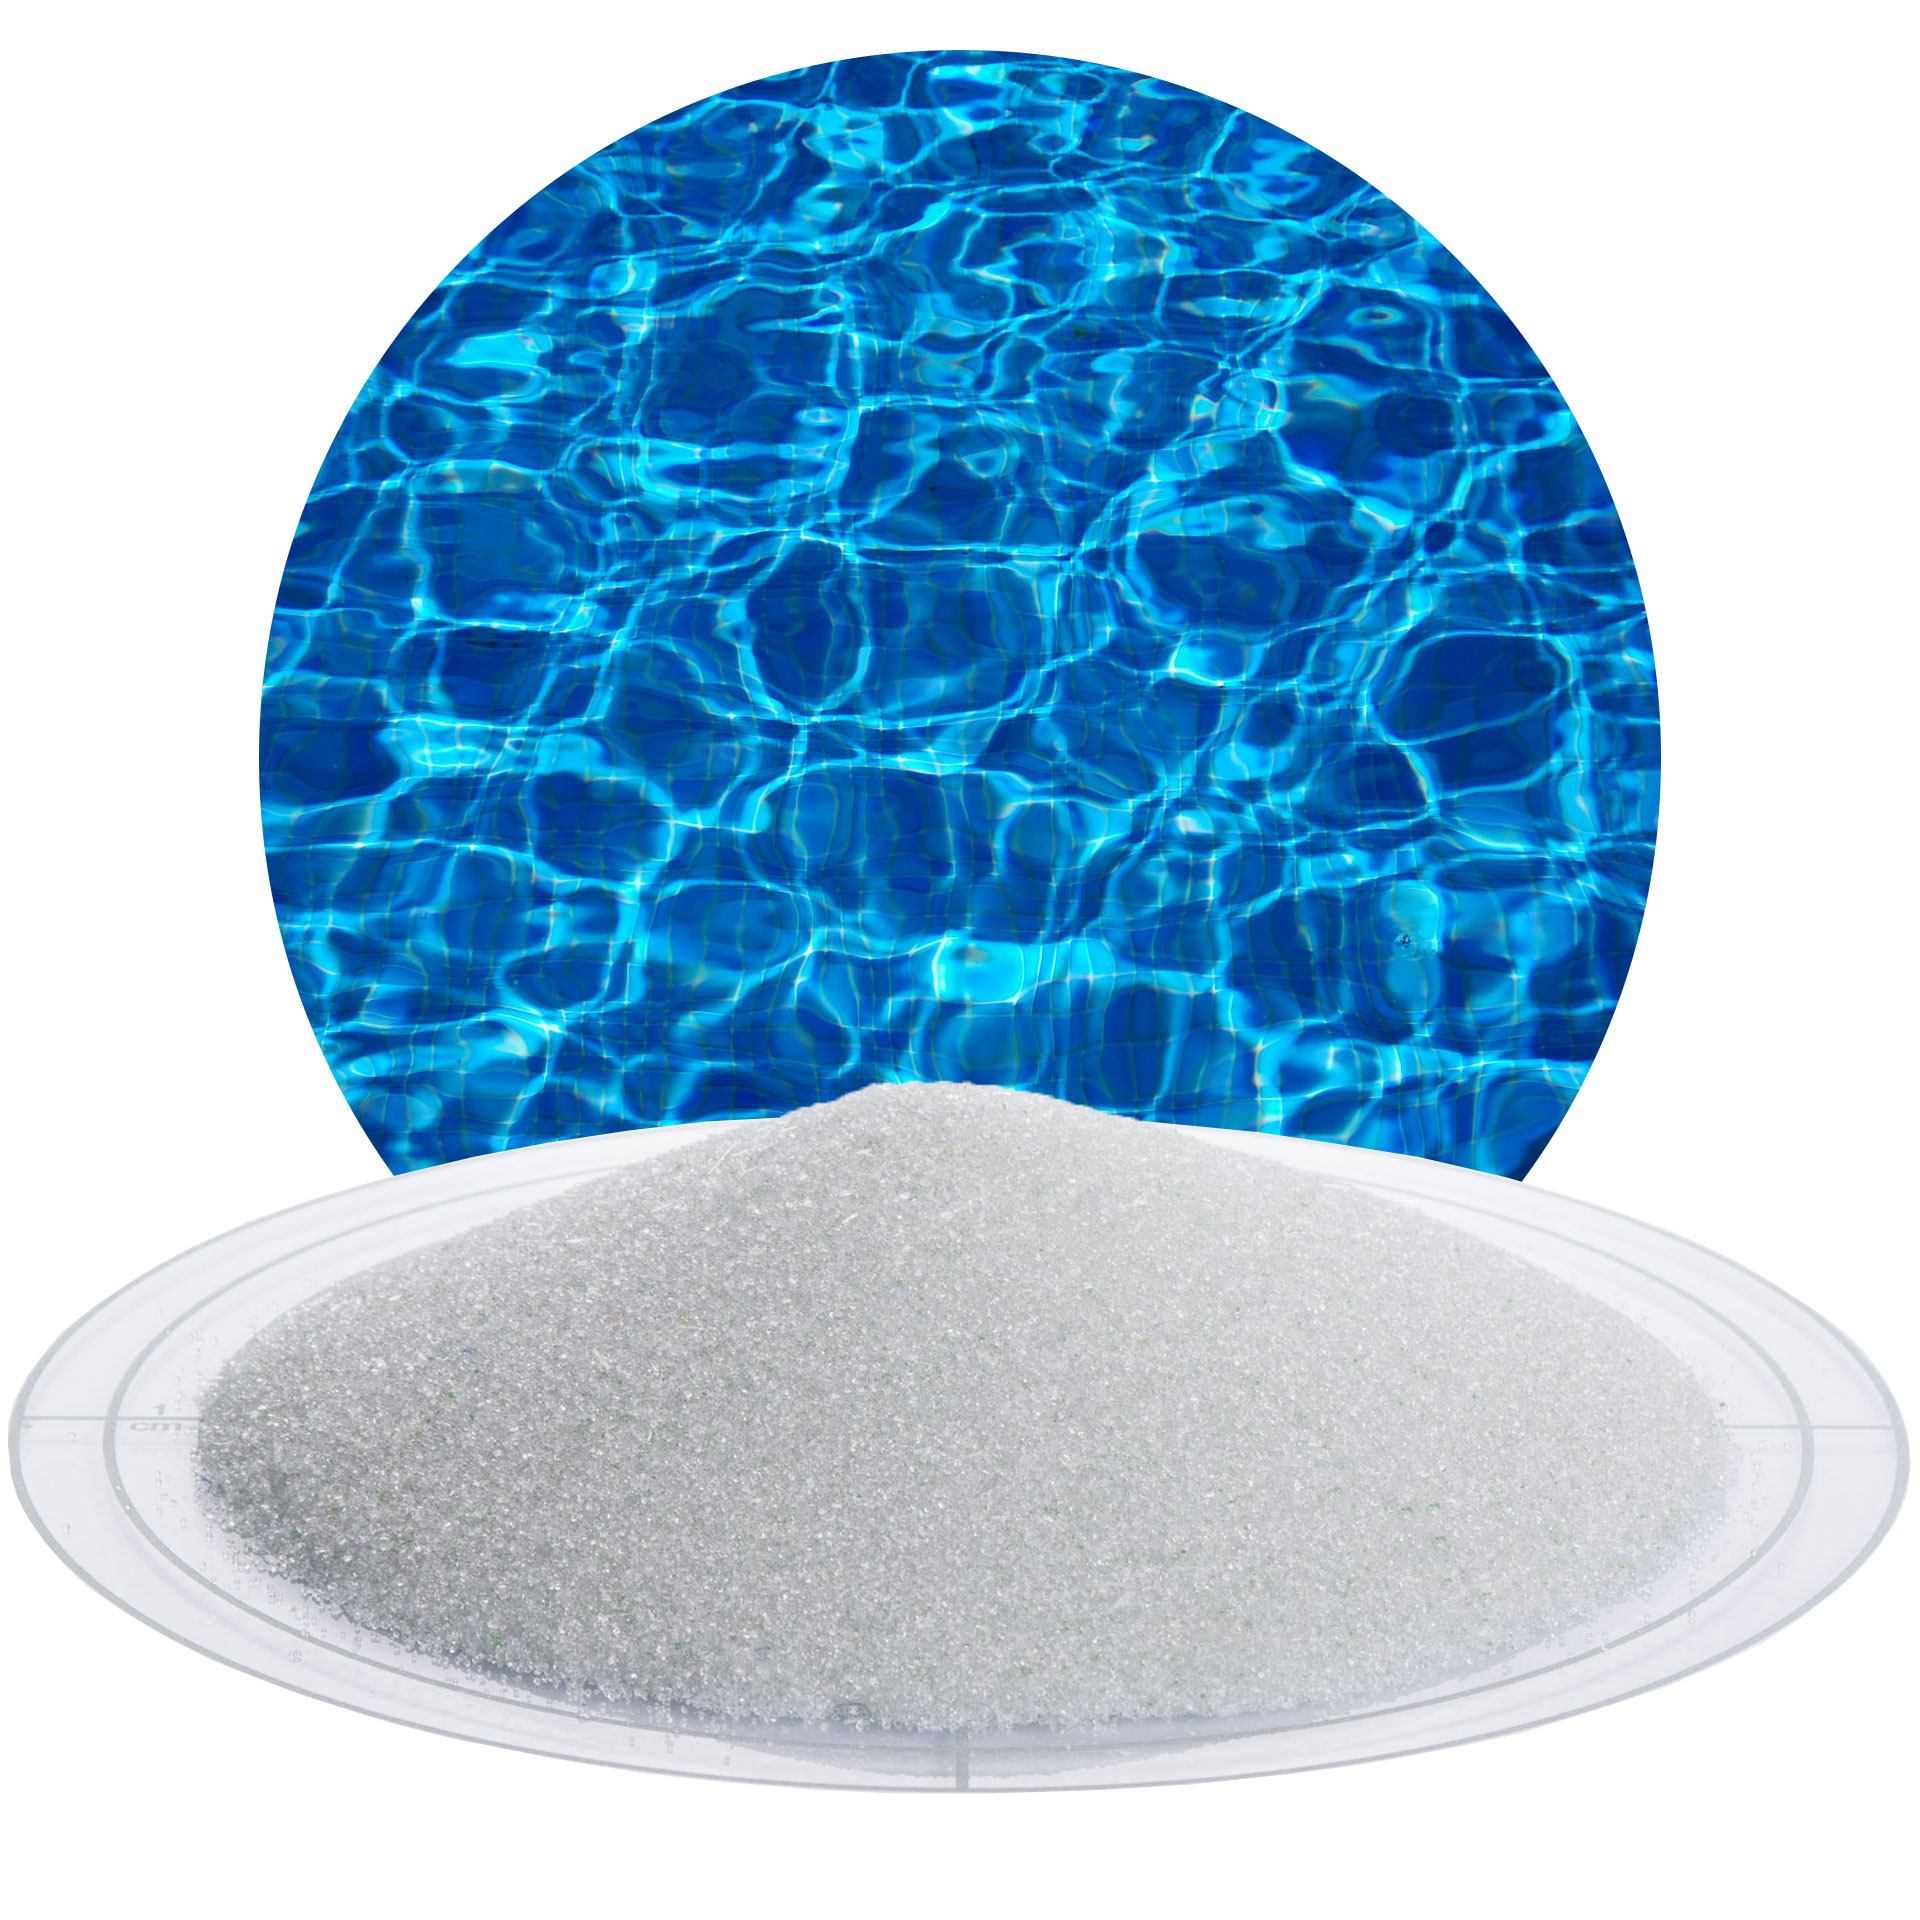 Hochwertiges Pool Filtermedium im 20 kg Sack Filterglas Körnung 0,5-1,0 mm 